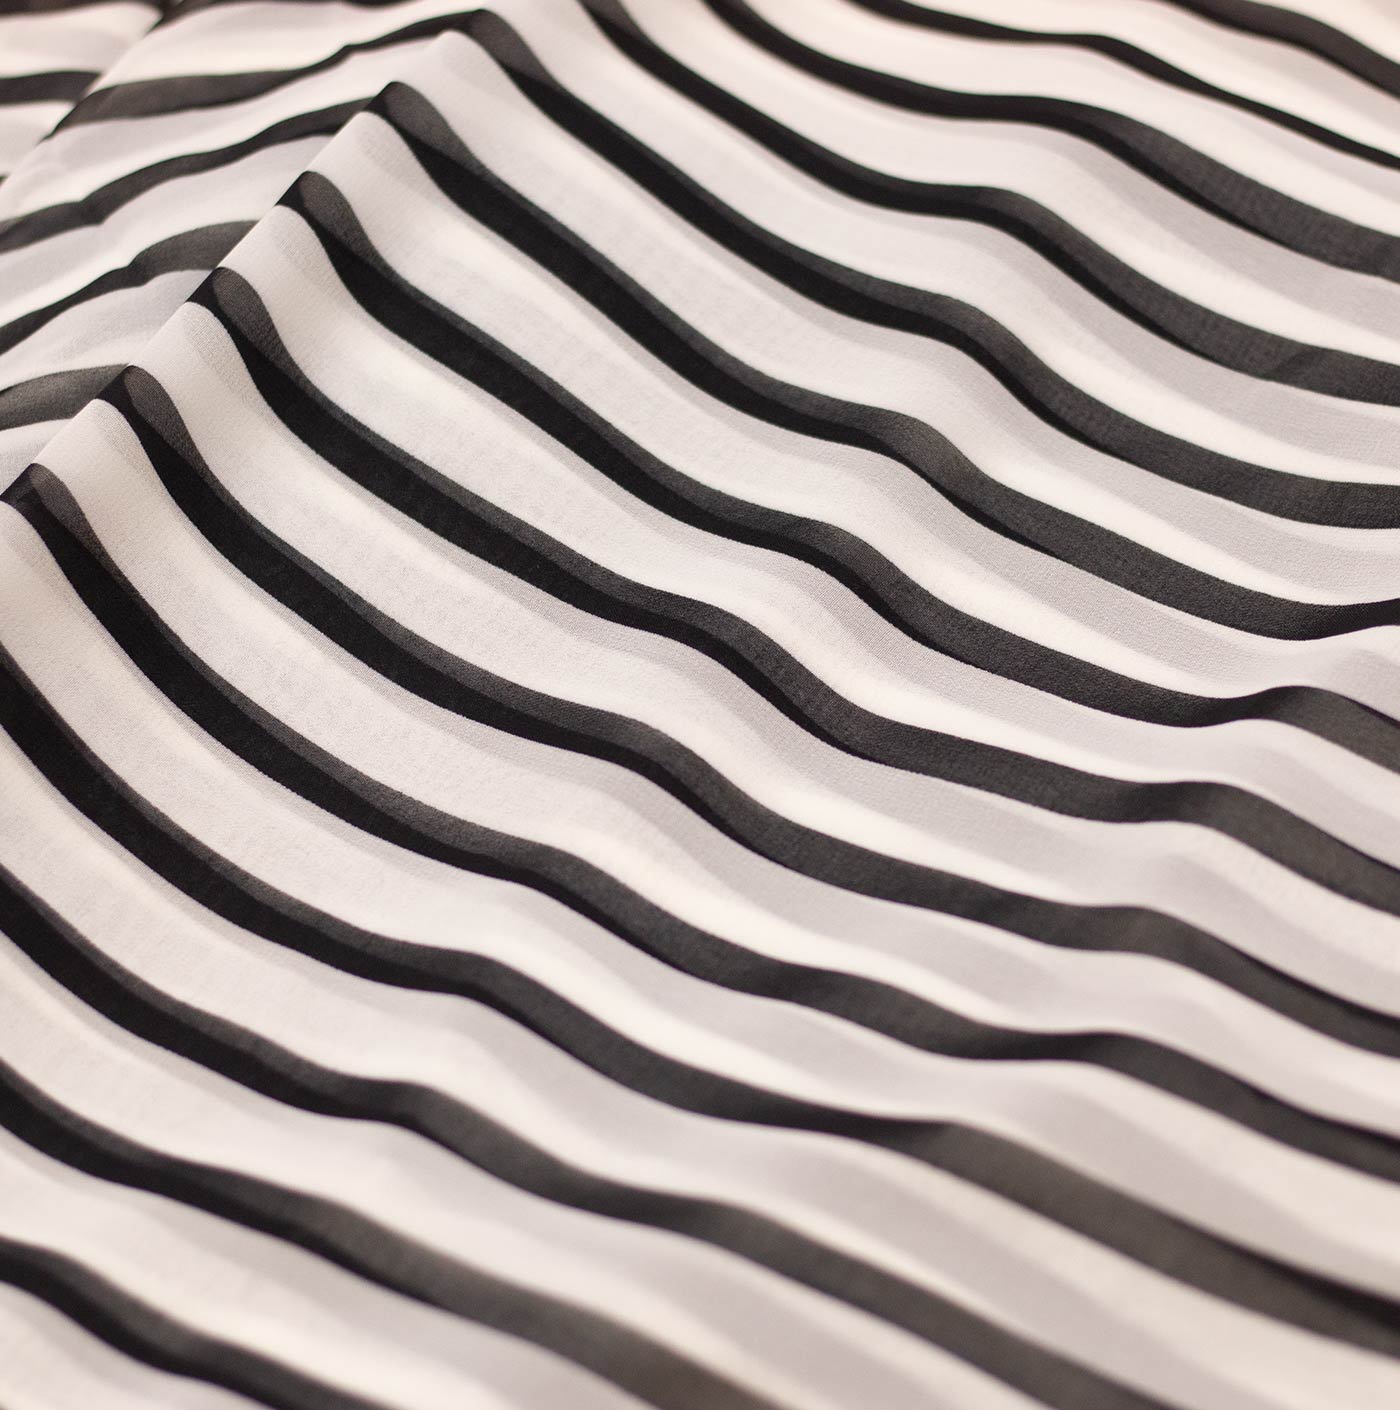 Black Stripes Printed Chiffon Fabric